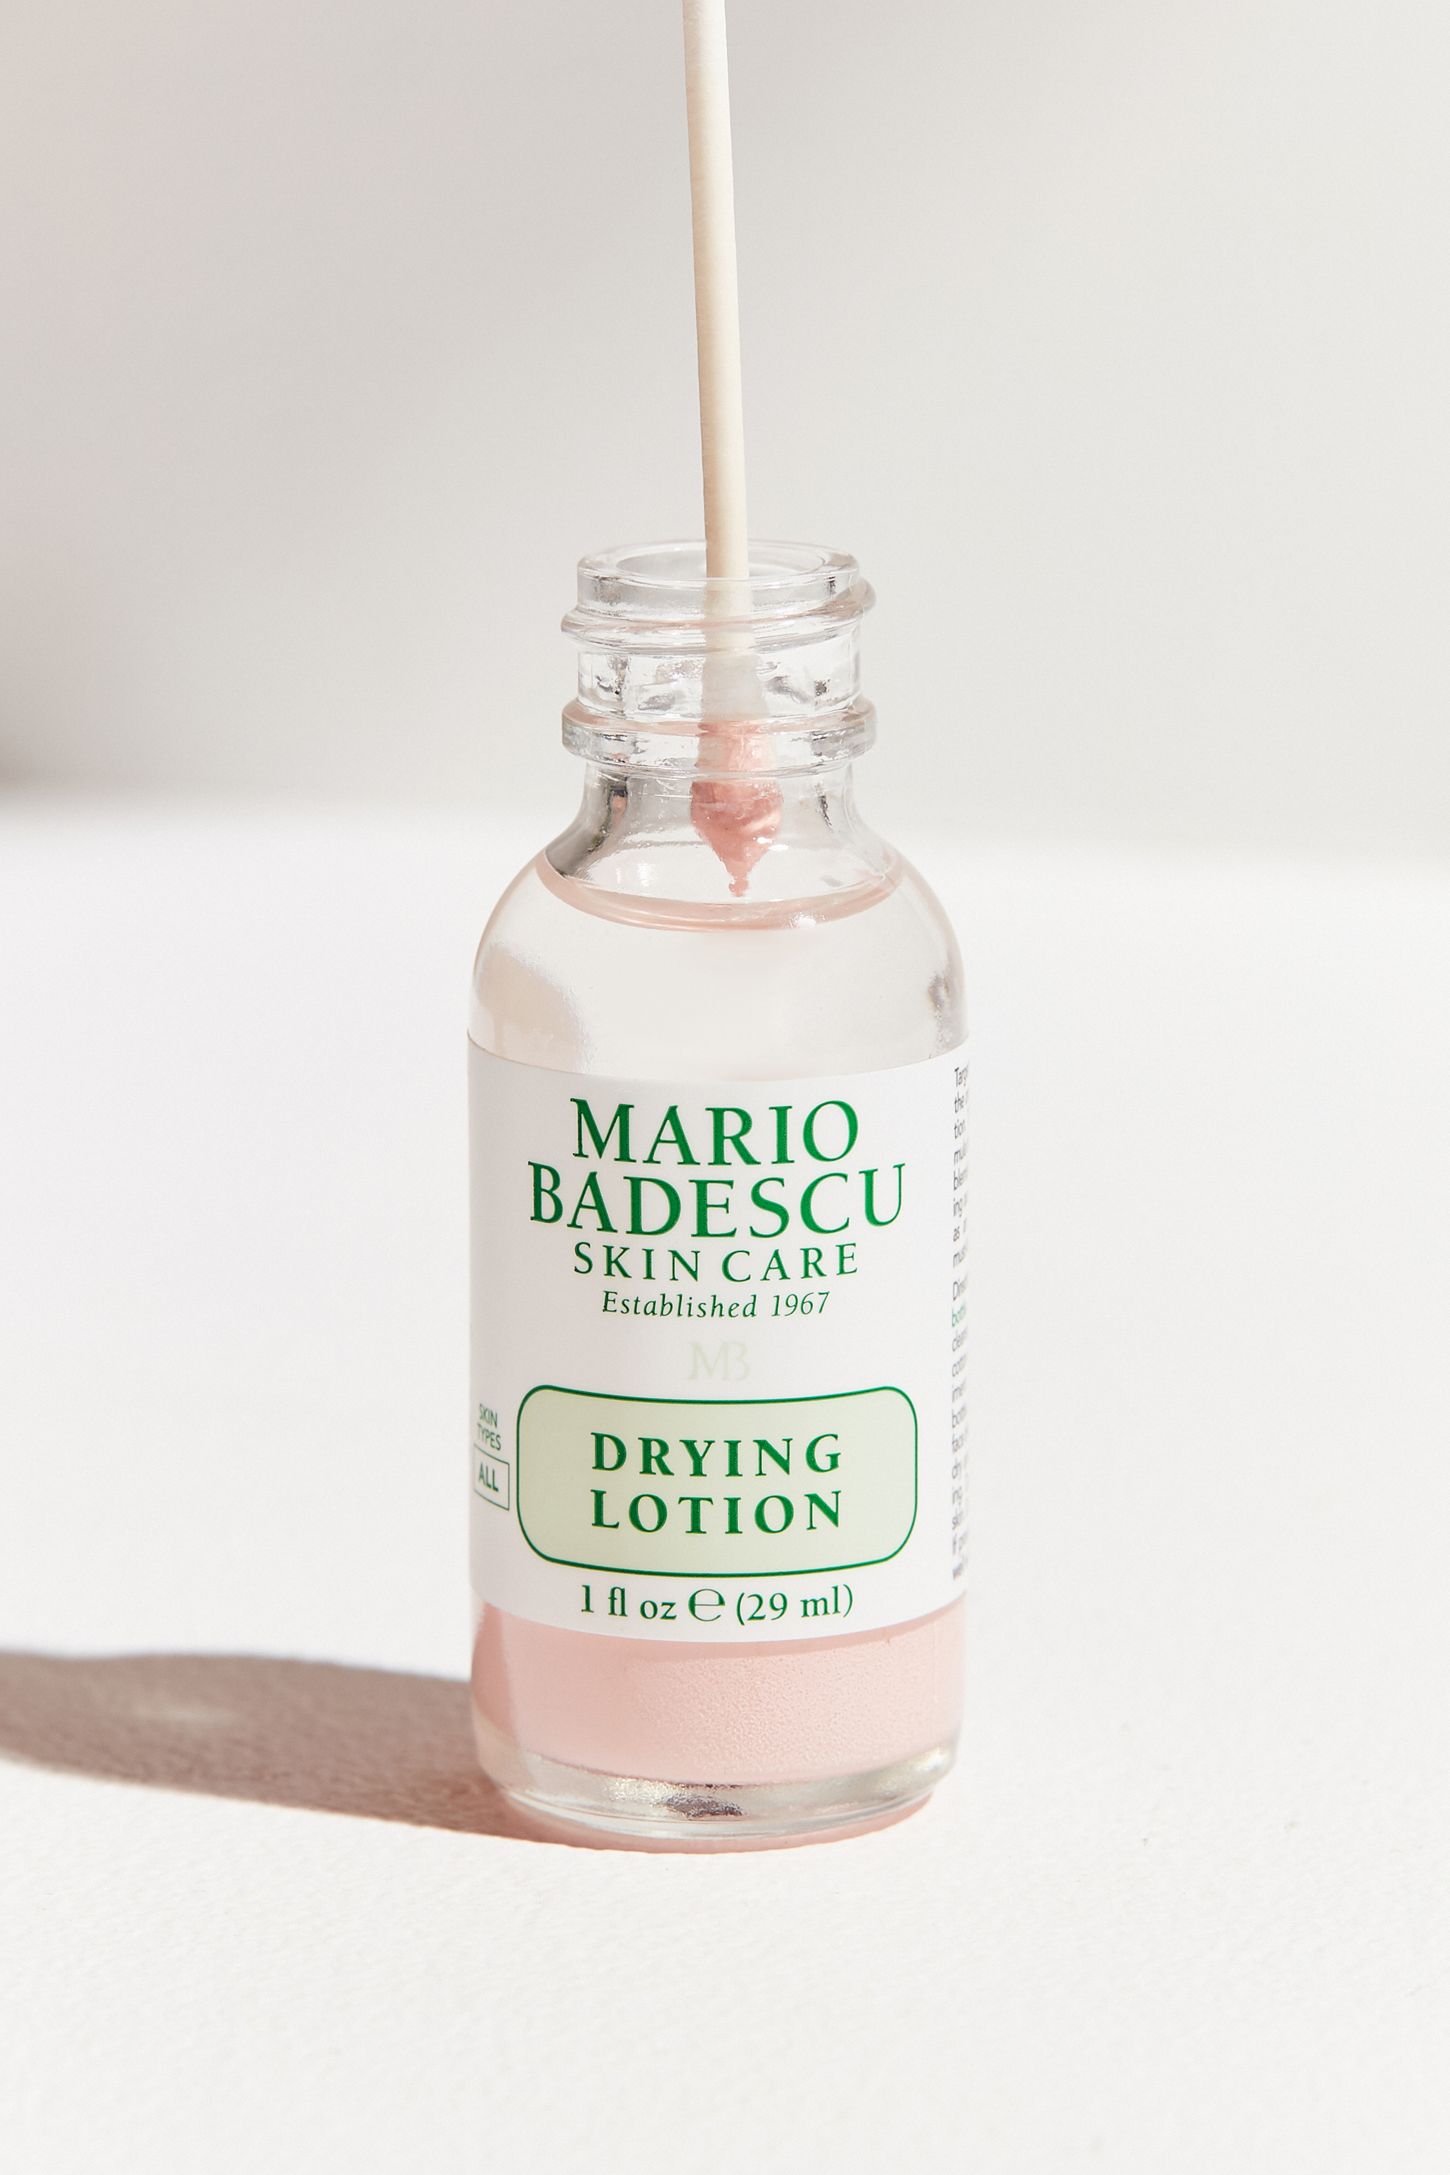 à¸à¸¥à¸à¸²à¸£à¸à¹à¸à¸«à¸²à¸£à¸¹à¸à¸à¸²à¸à¸ªà¸³à¸«à¸£à¸±à¸ mario badescu drying lotion